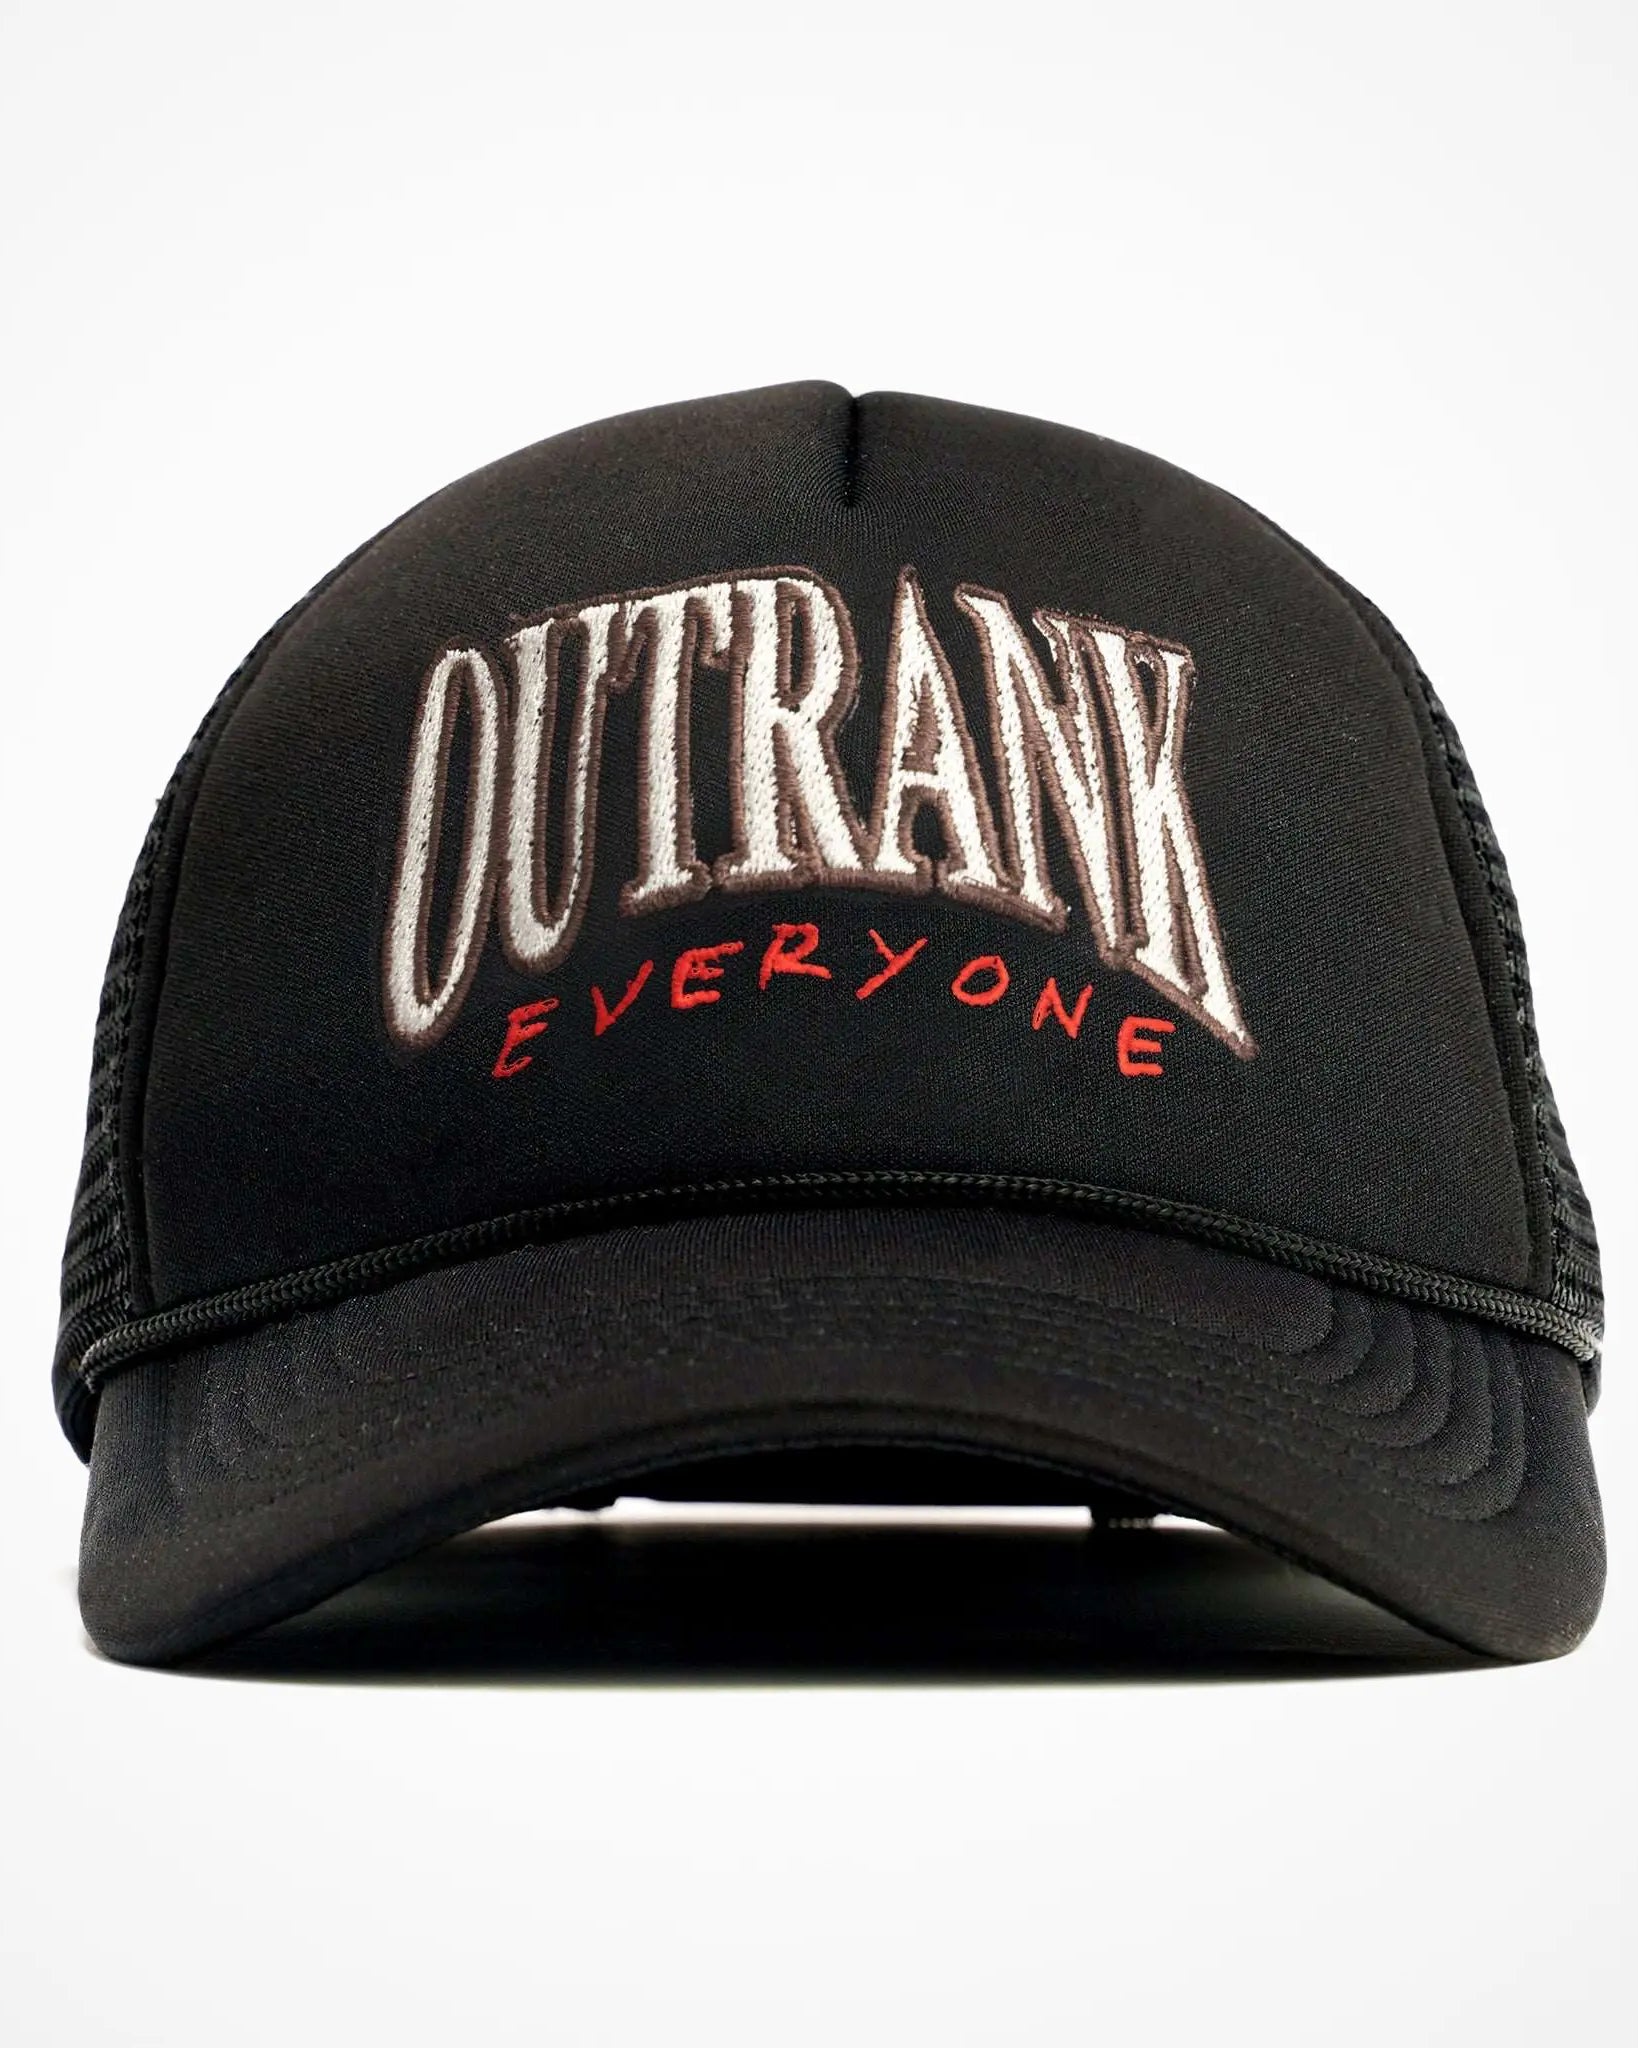 Outrank Everyone Foam Trucker Hat - Outrank